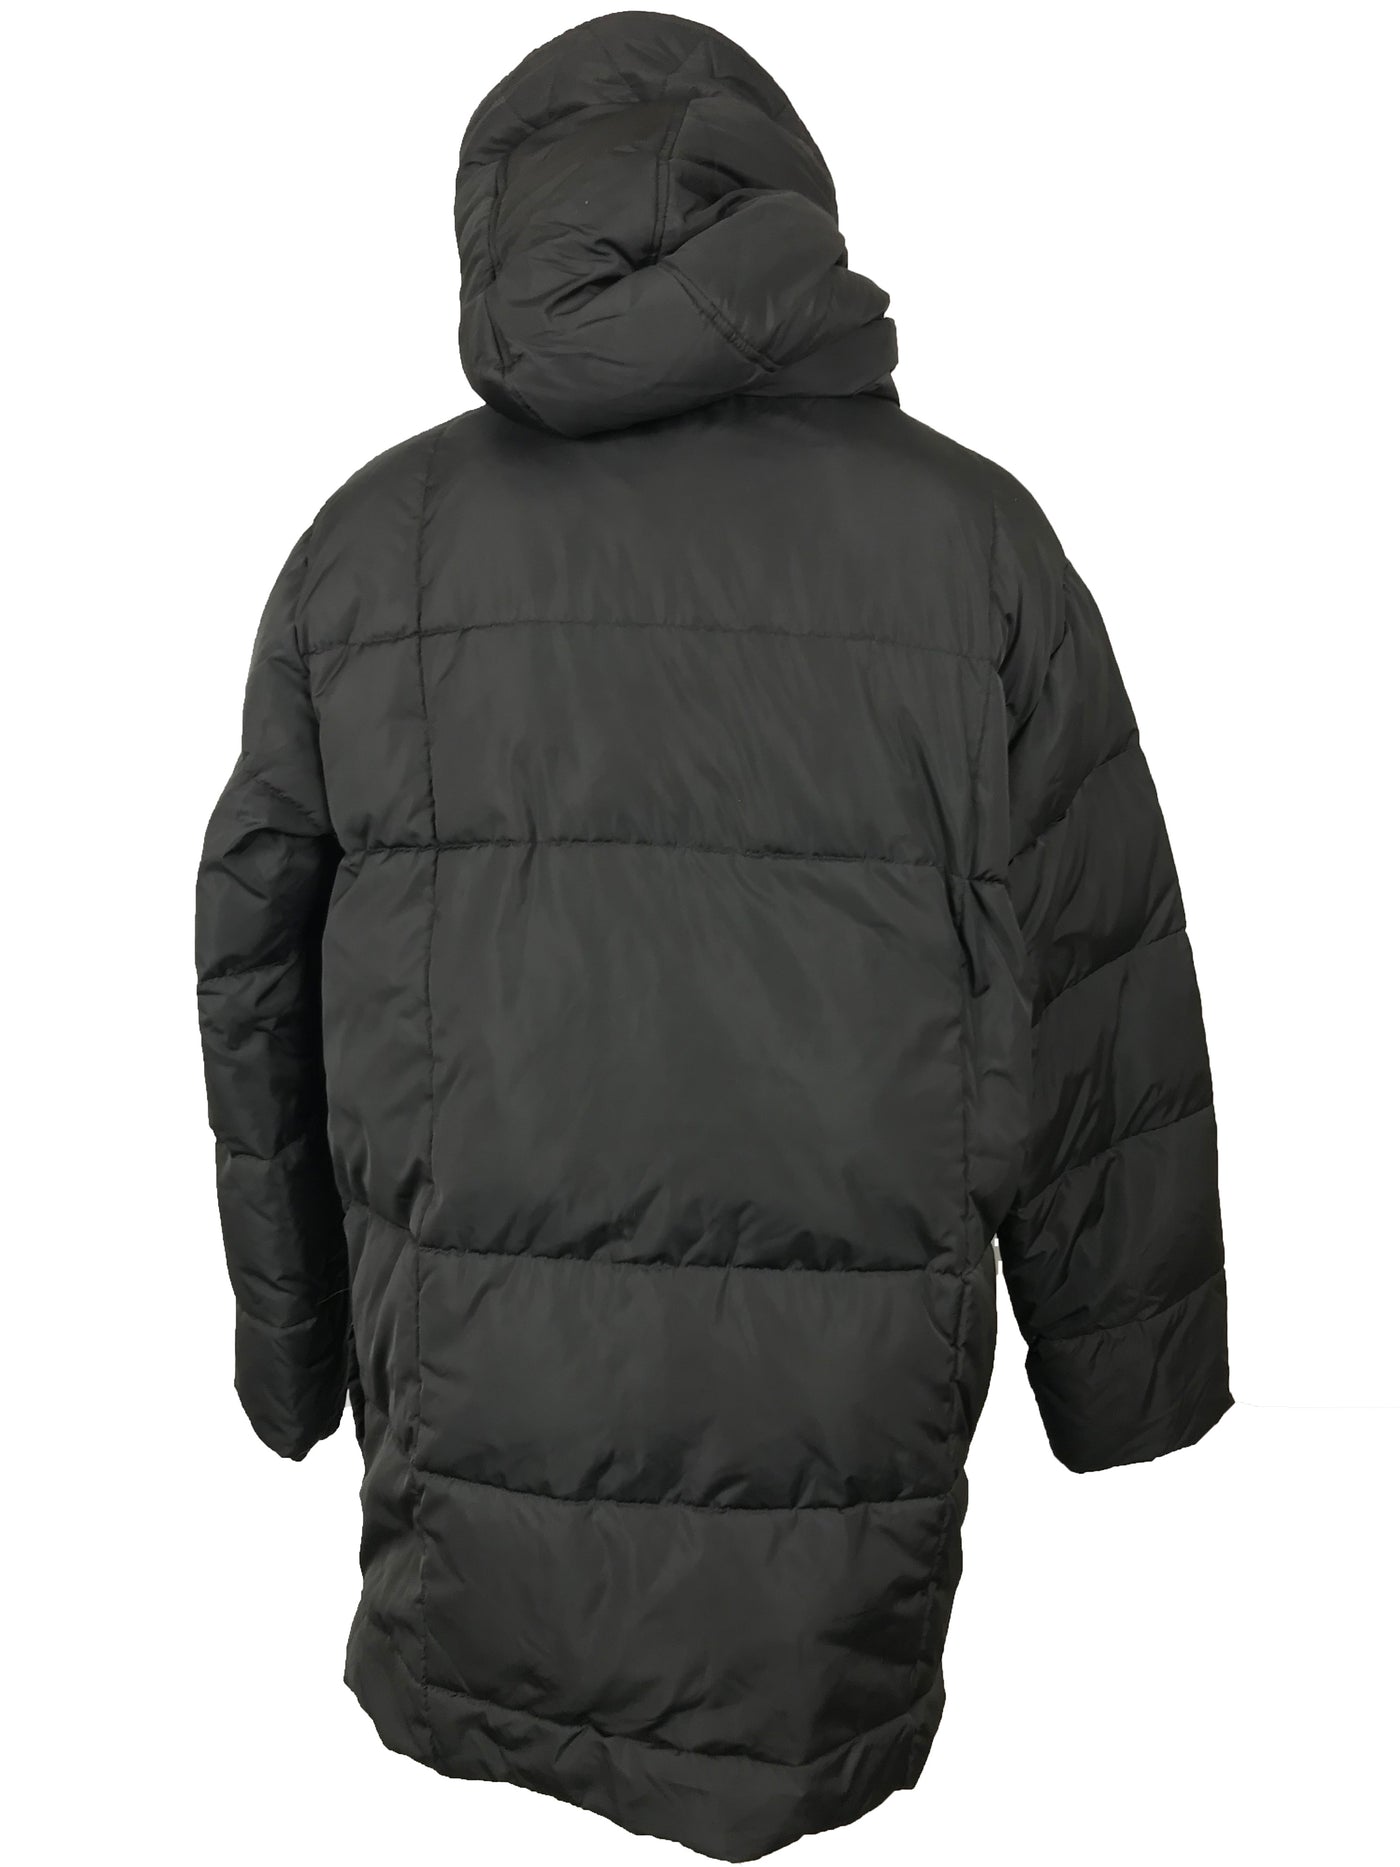 Tommy Hilfiger Black Winter Coat Men's Size –